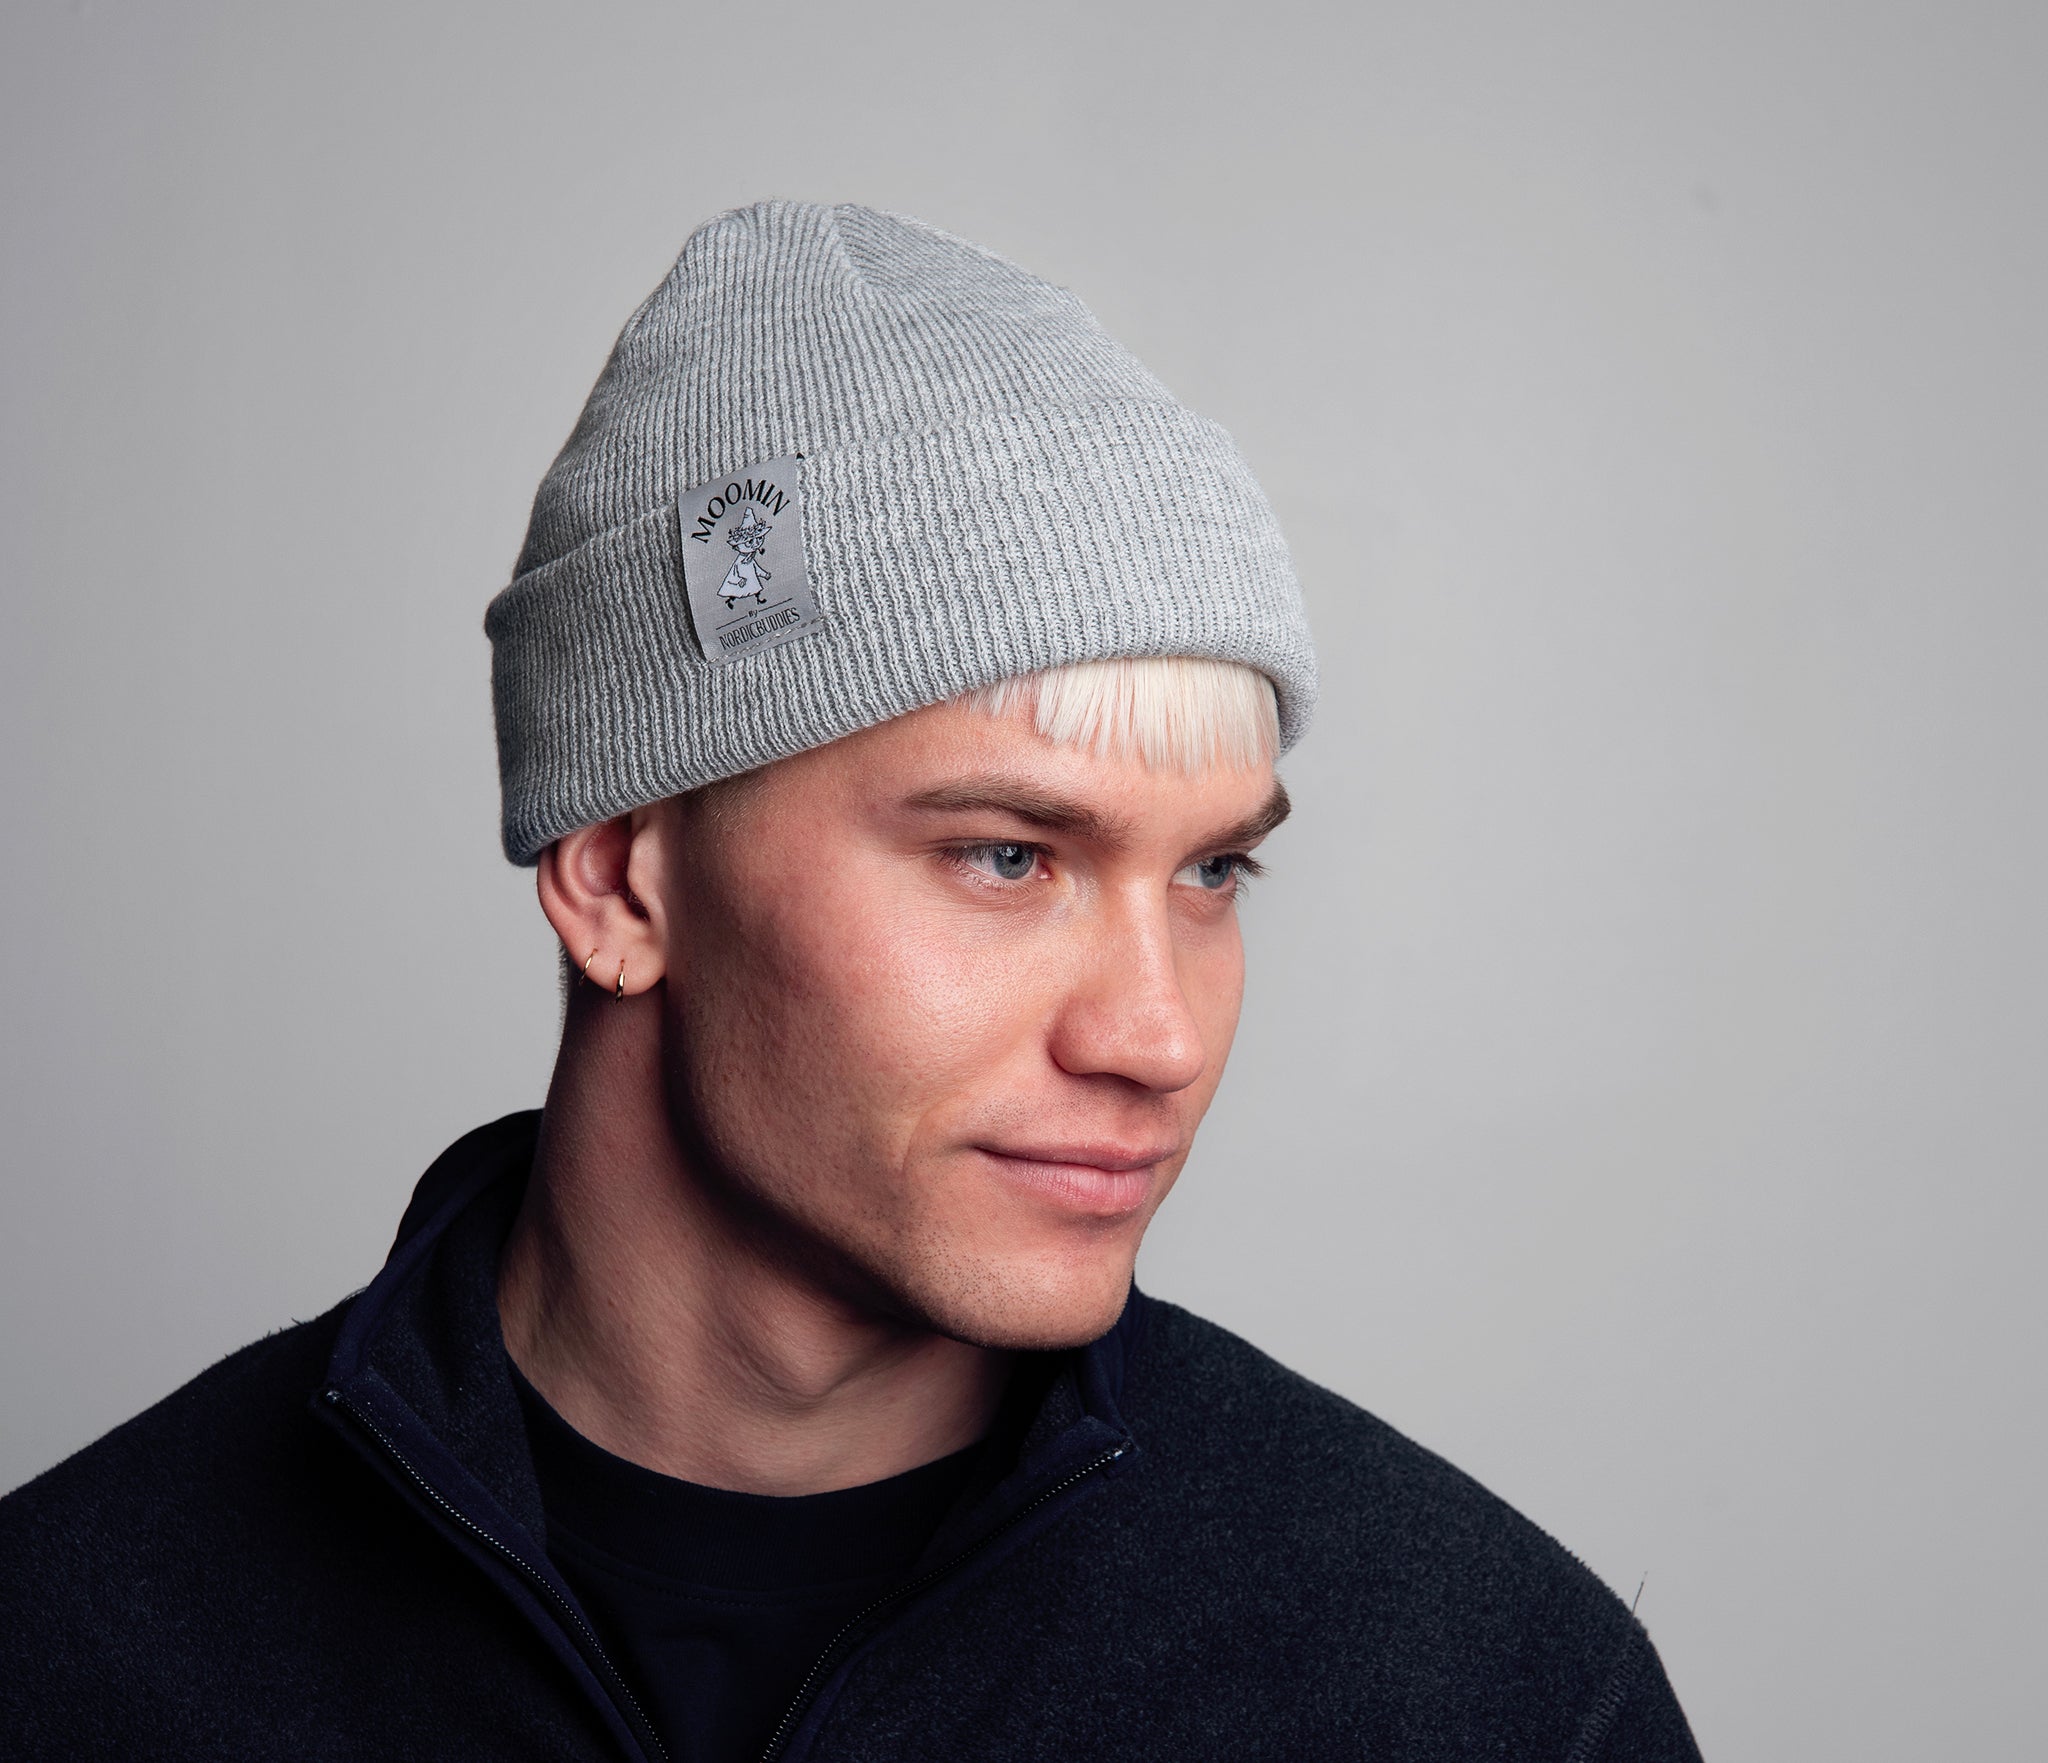 Snufkin Winter Hat Beanie Adult - Grey